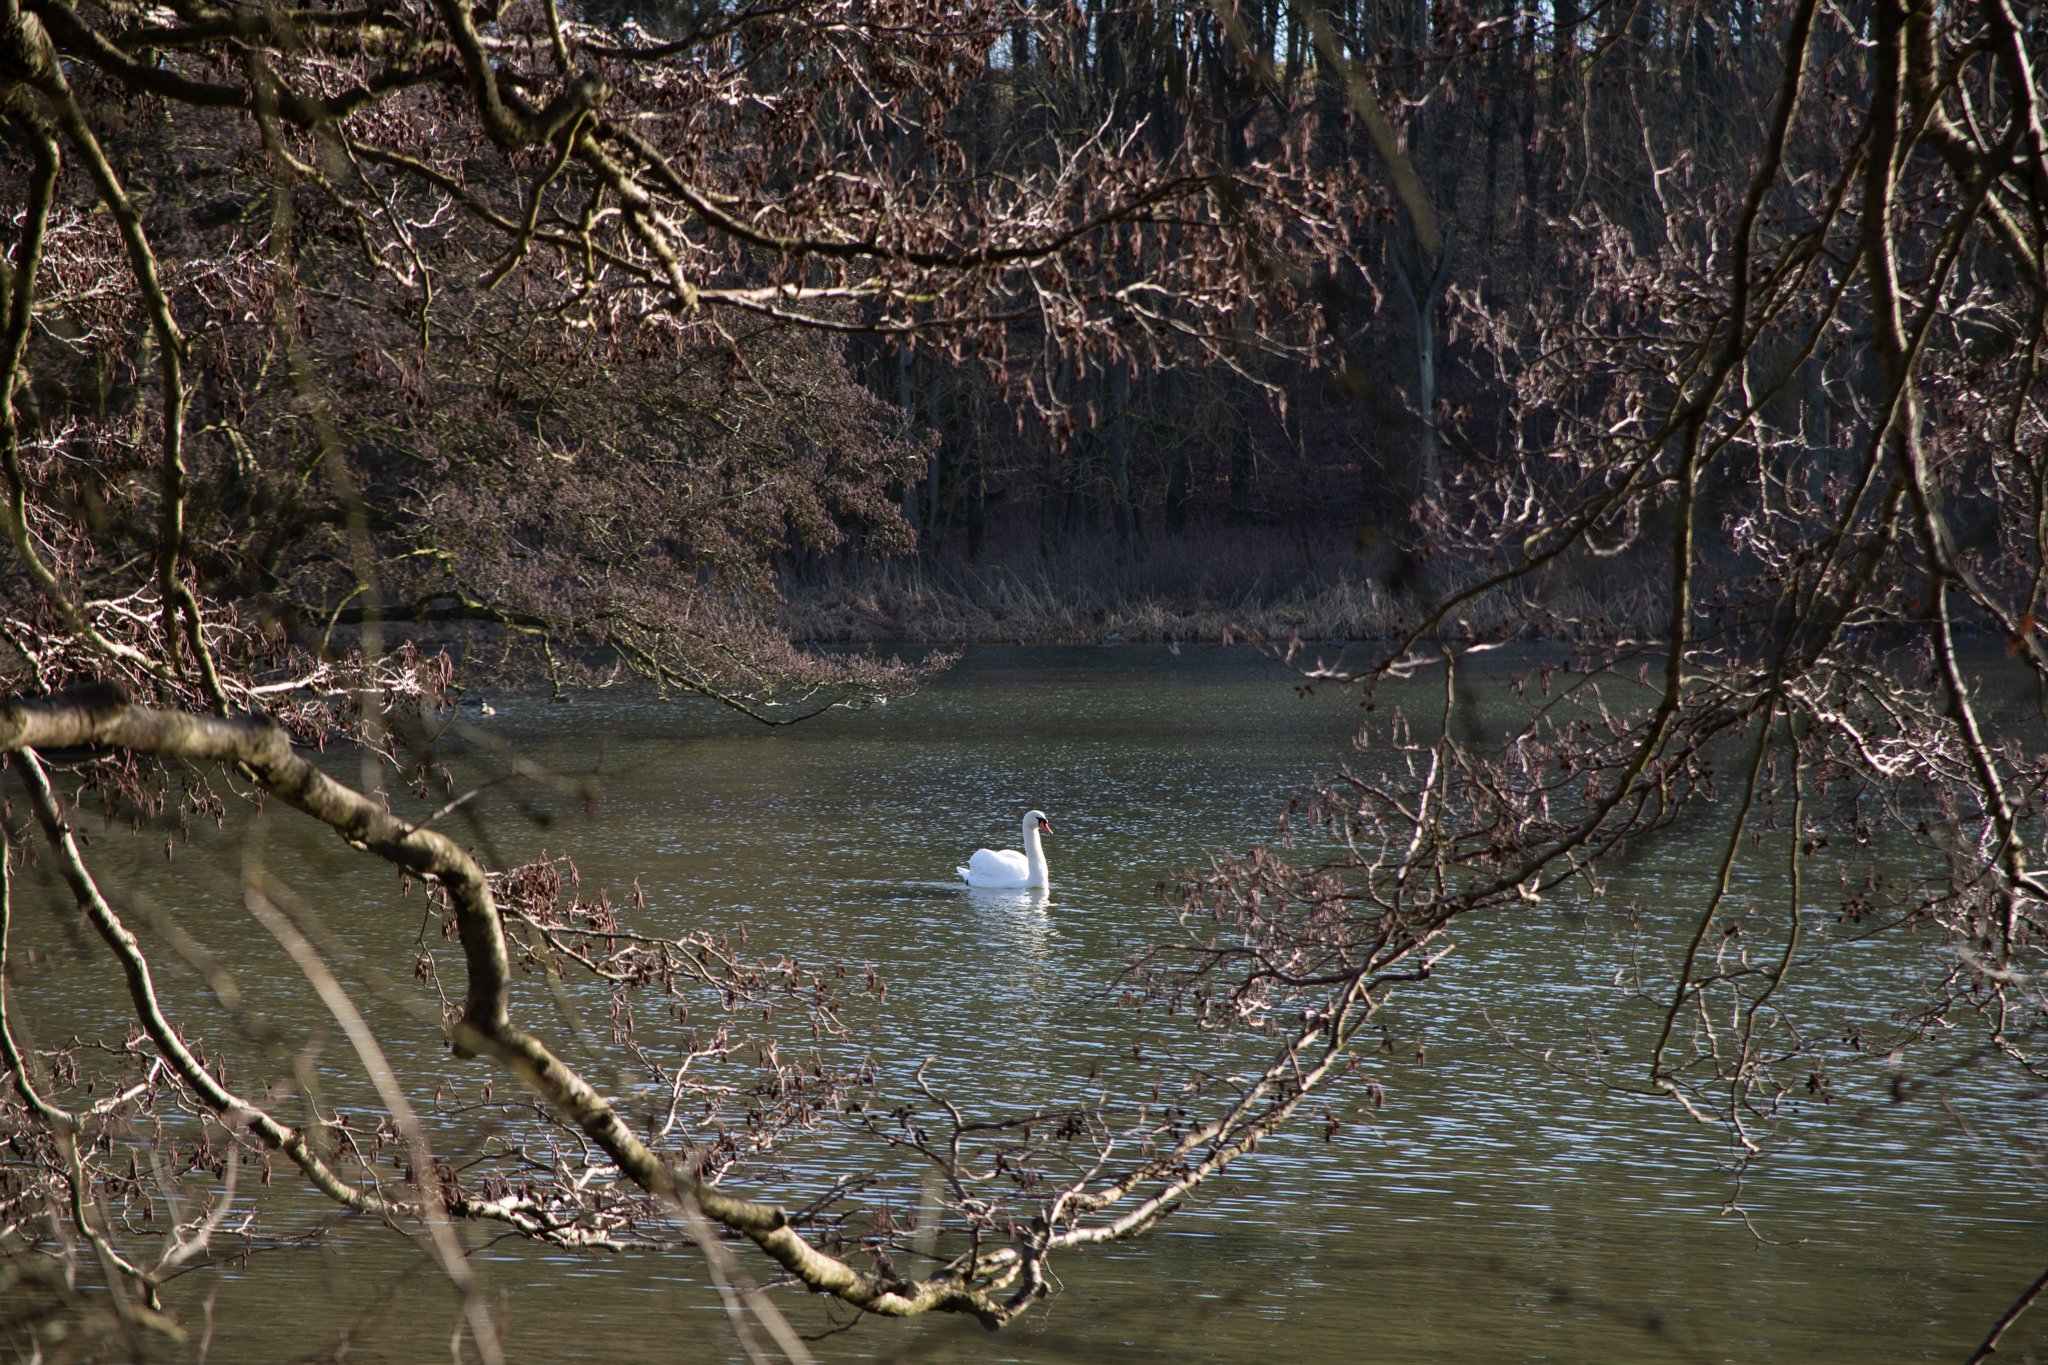 Swan on lake.jpg